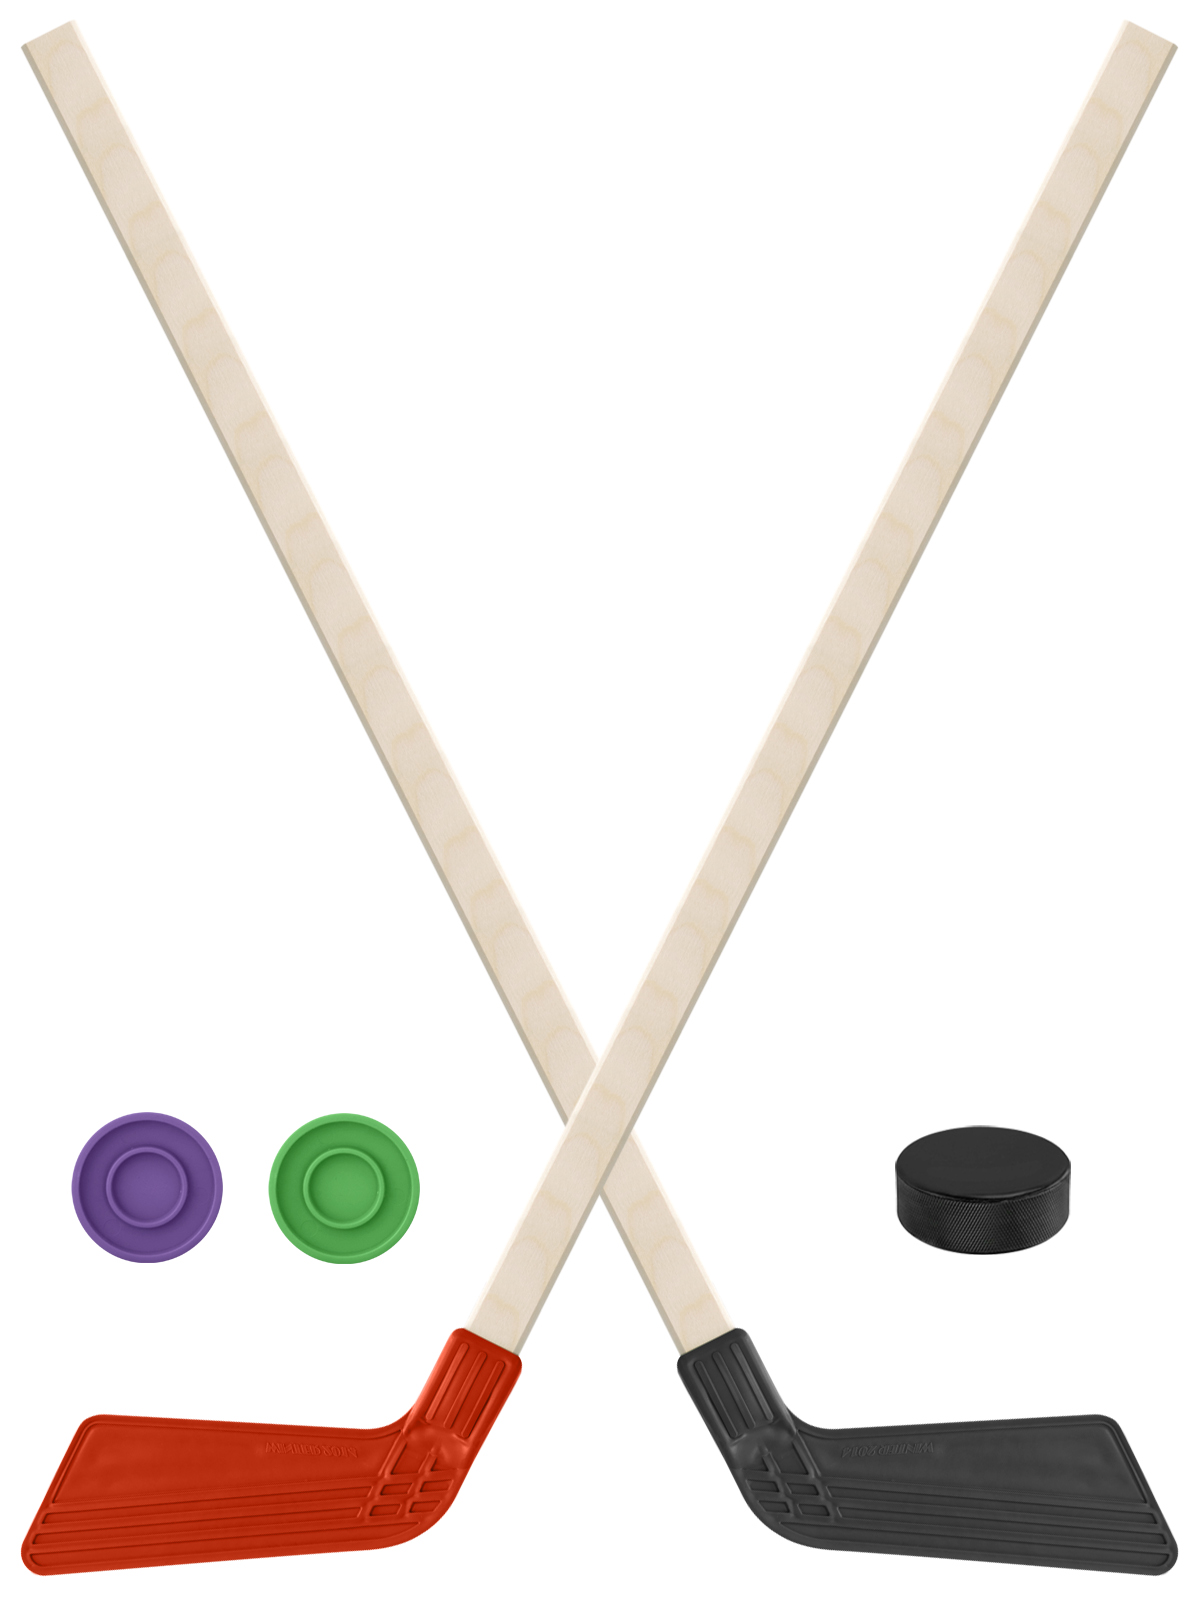 Детский хоккейный набор Задира-плюс Клюшка хоккейная 2шт(красн,чёрн) +2 шайбы+Шайба 60 мм клюшка флорбольная acito mini 35 orange 65 round прямой 3006 003